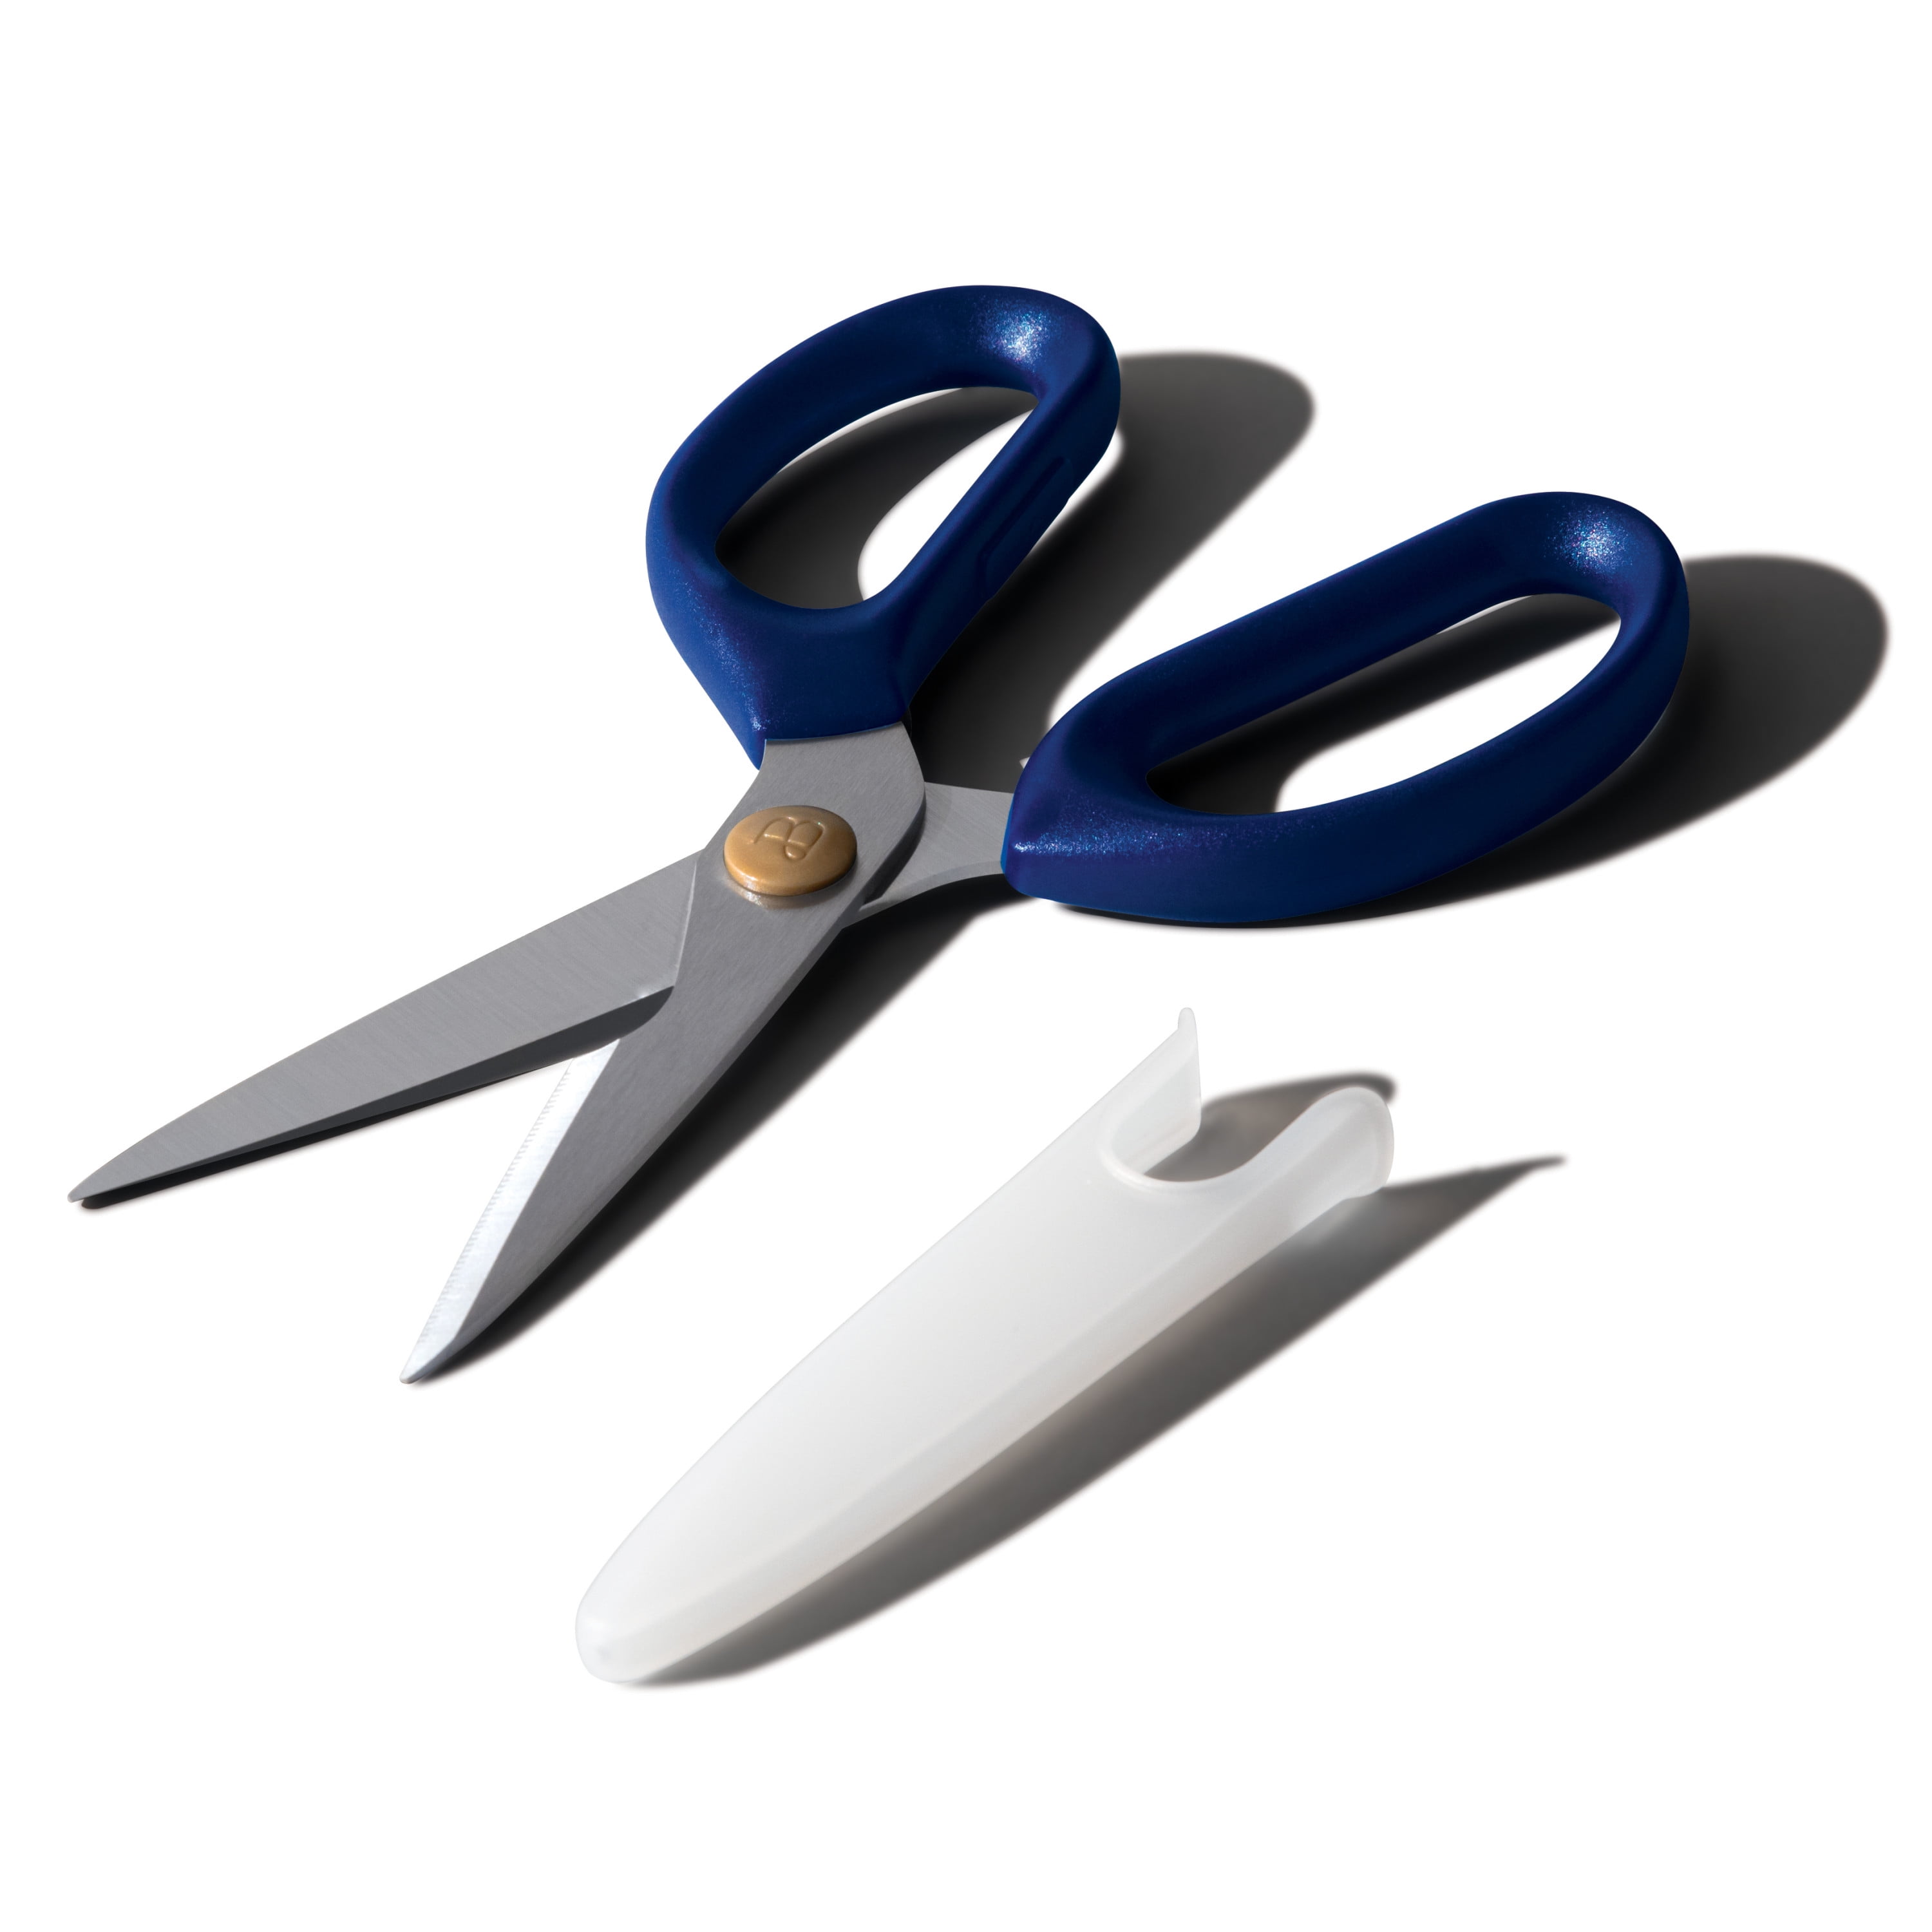 Blueberry's Multi Purpose Kitchen Scissors 